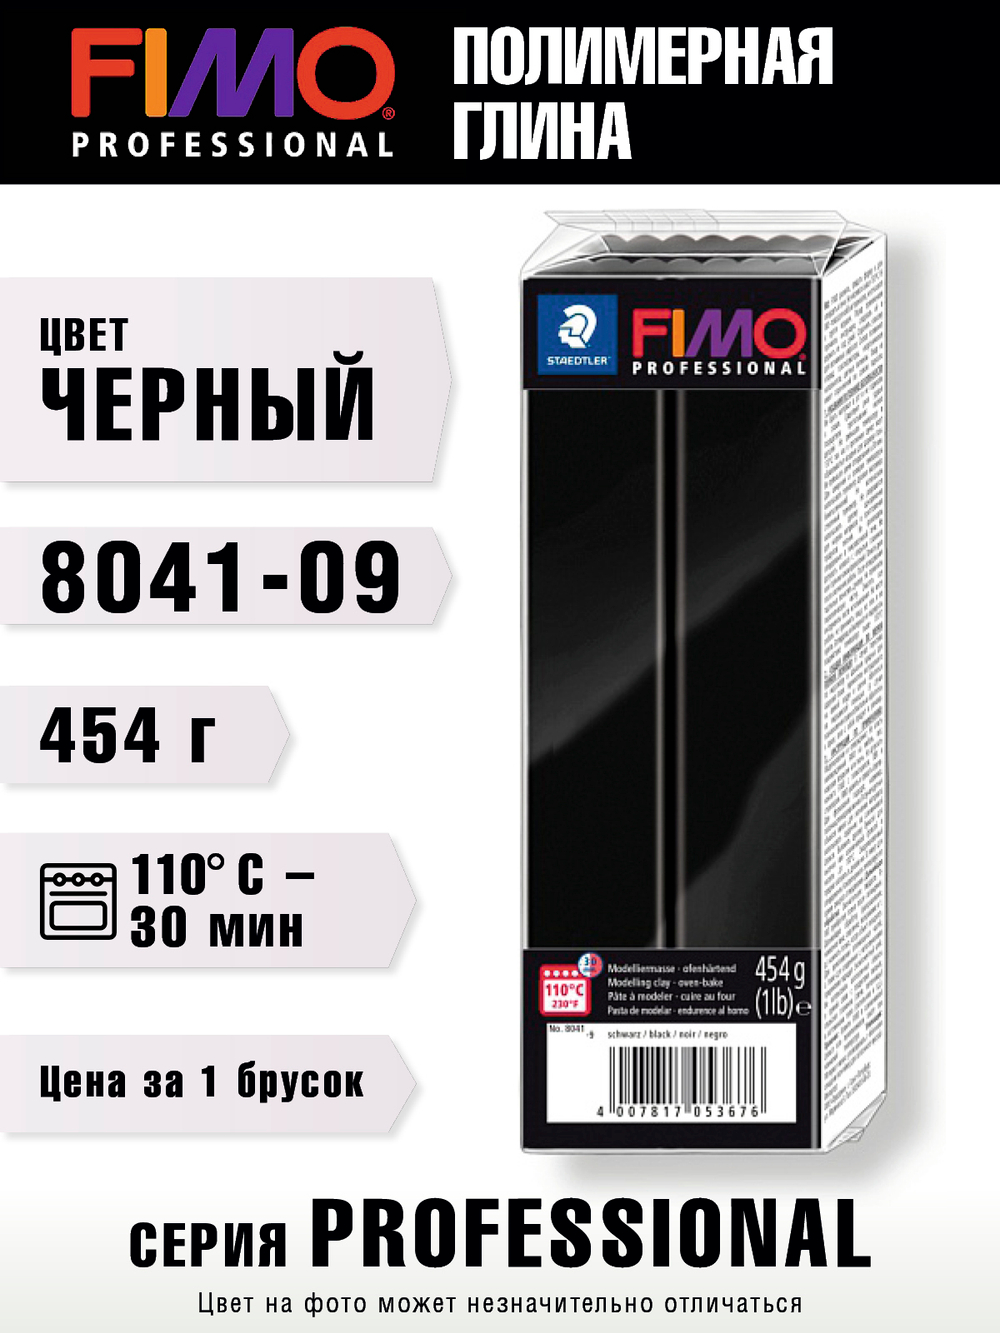 Полимерная глина FIMO Professional 454 г